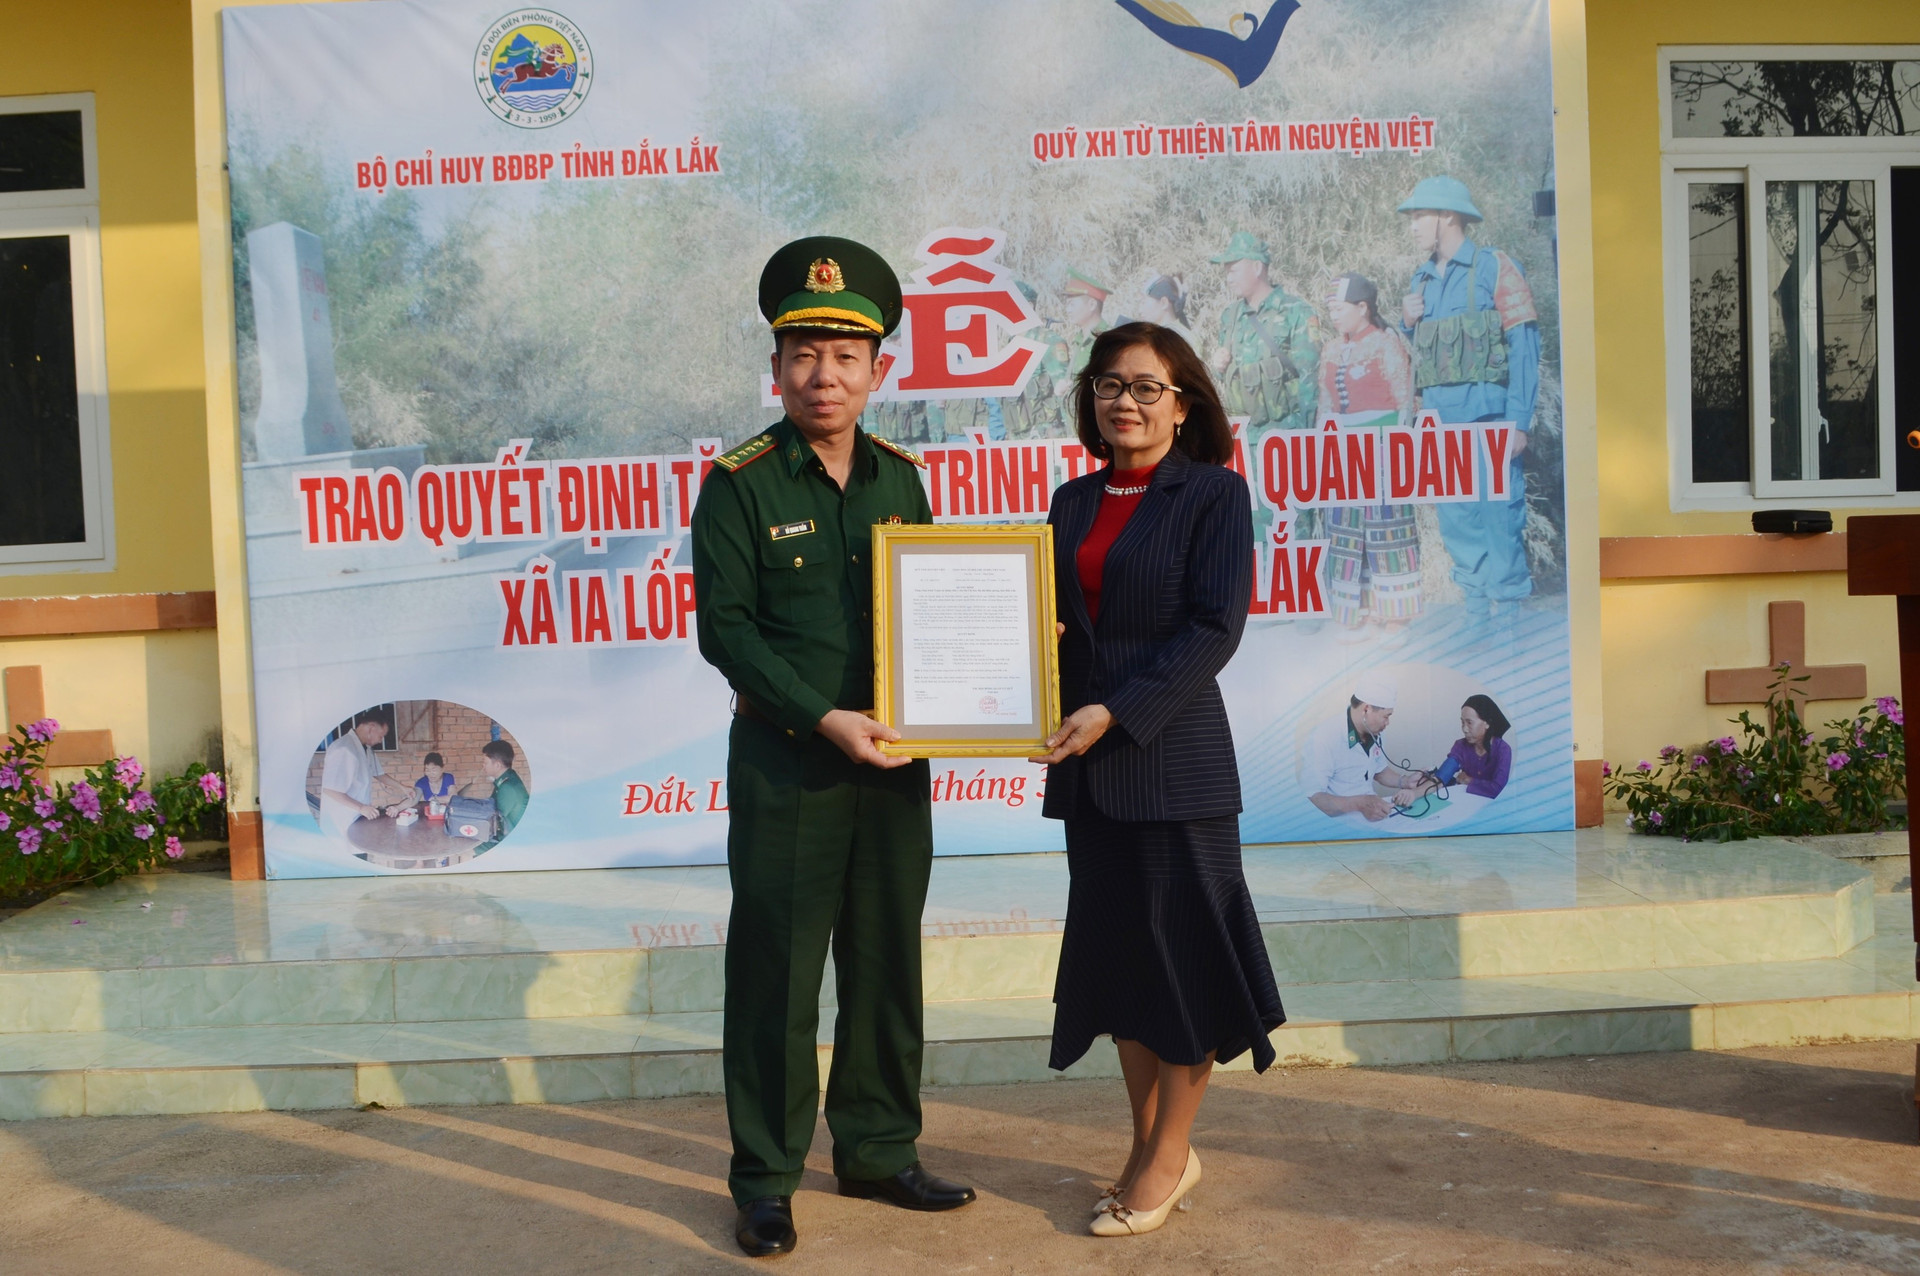 Đại diện Quỹ xã hội từ thiện Tâm Nguyện Việt trao quyết định tặng công trình Trạm xá quân dân y xã Ia Lốp cho Bộ Chỉ huy Bộ đội Biên phòng tỉnh Đắk Lắk.